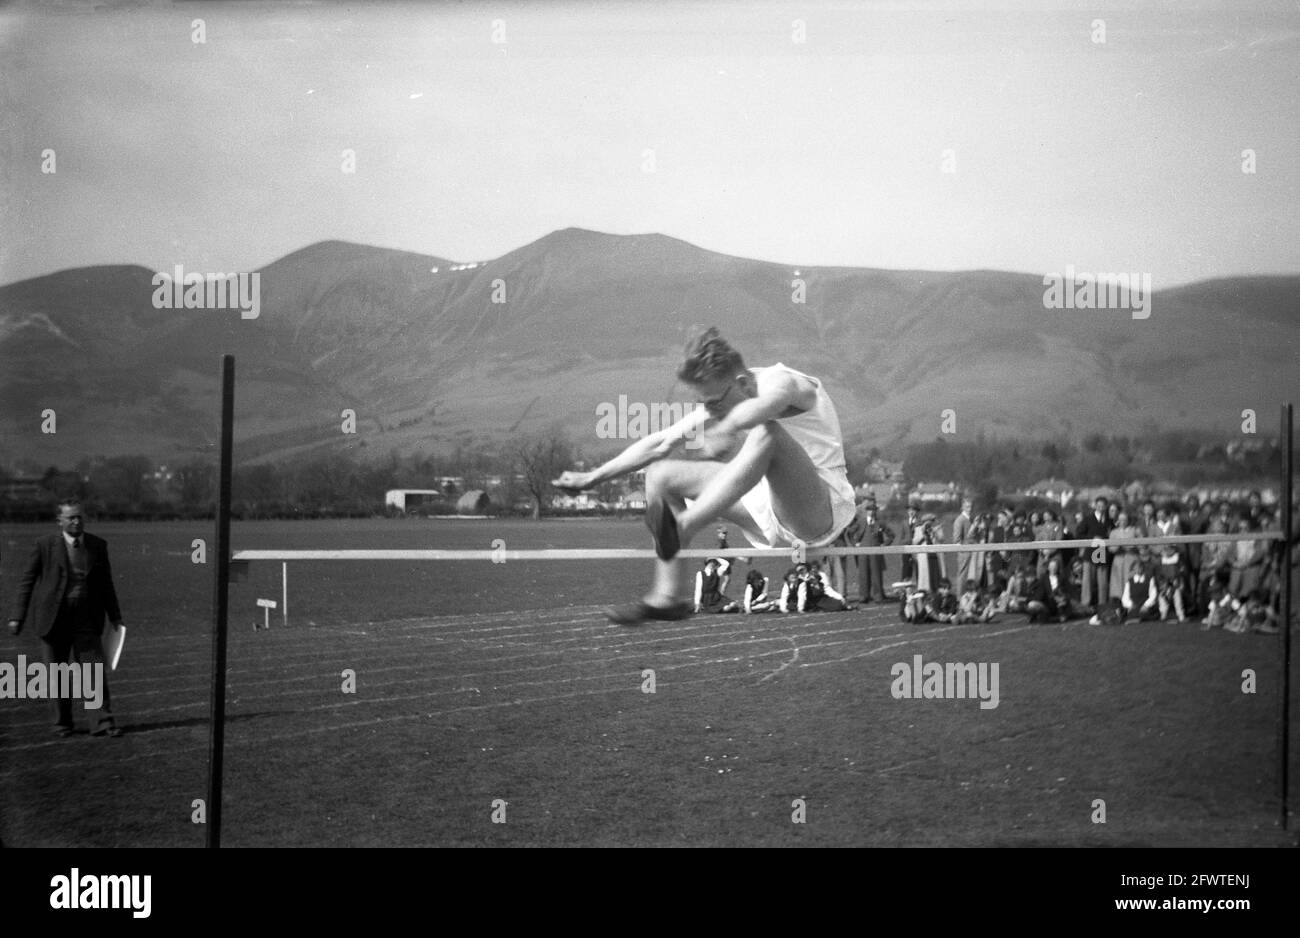 1951, historisches Bild, vor dem Hintergrund von Bergketten, draußen auf einem Grasfeld, ein Schuljunge beim Hochsprung, Highlands, Schottland. Beobachtet von einer Menge Eltern und Kindern, ist seine Technik beim Versuch, über die horizontale Stange zu springen, ein traditioneller Sprung mit beiden Füßen nach vorne. Stockfoto